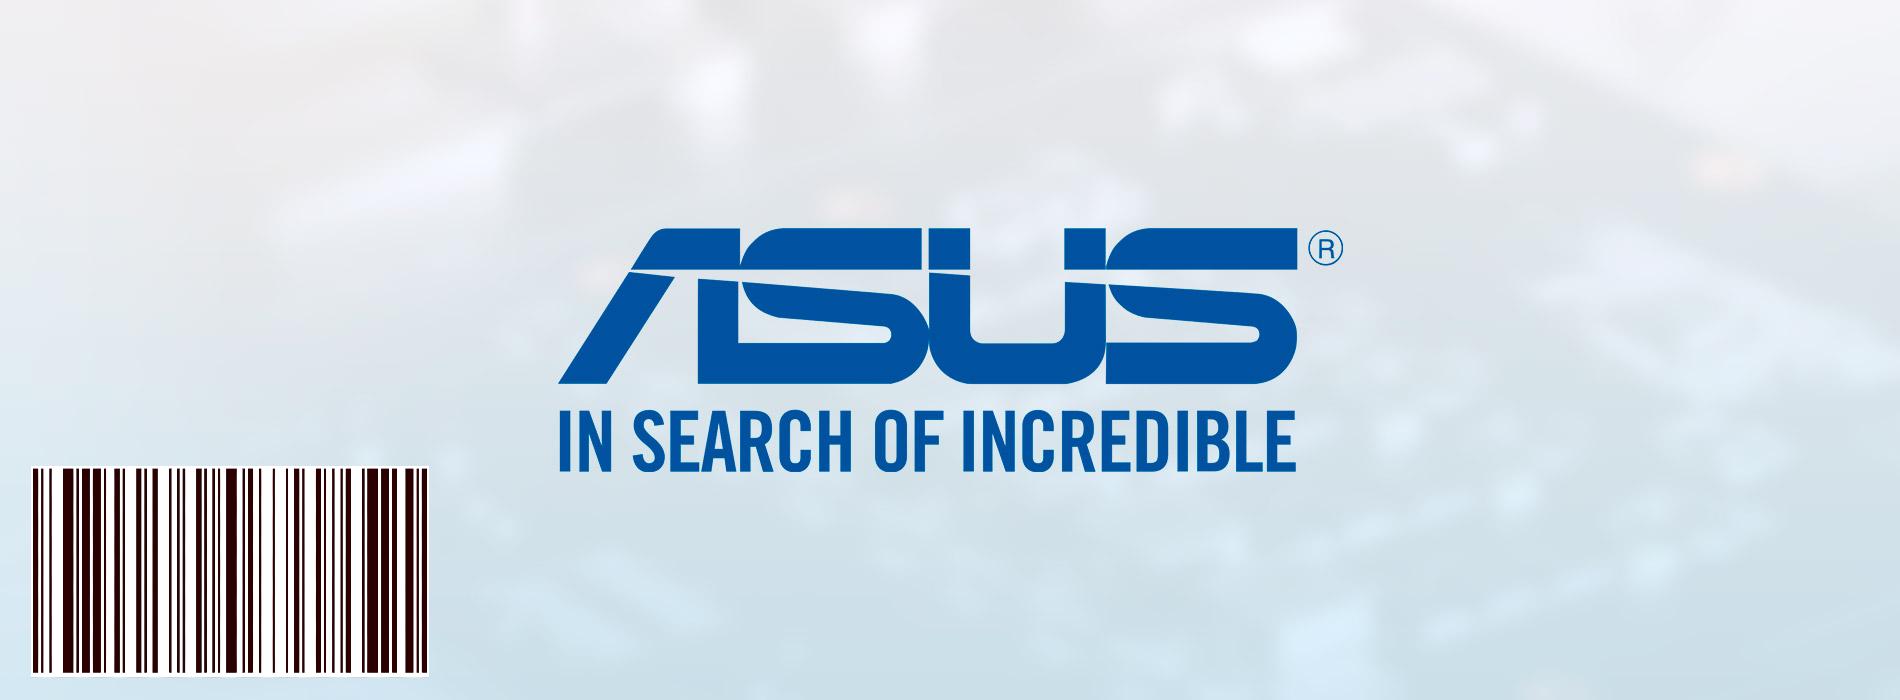 Conheça a história da Asus! Gigante da tecnologia que começou fabricando placas-mãe